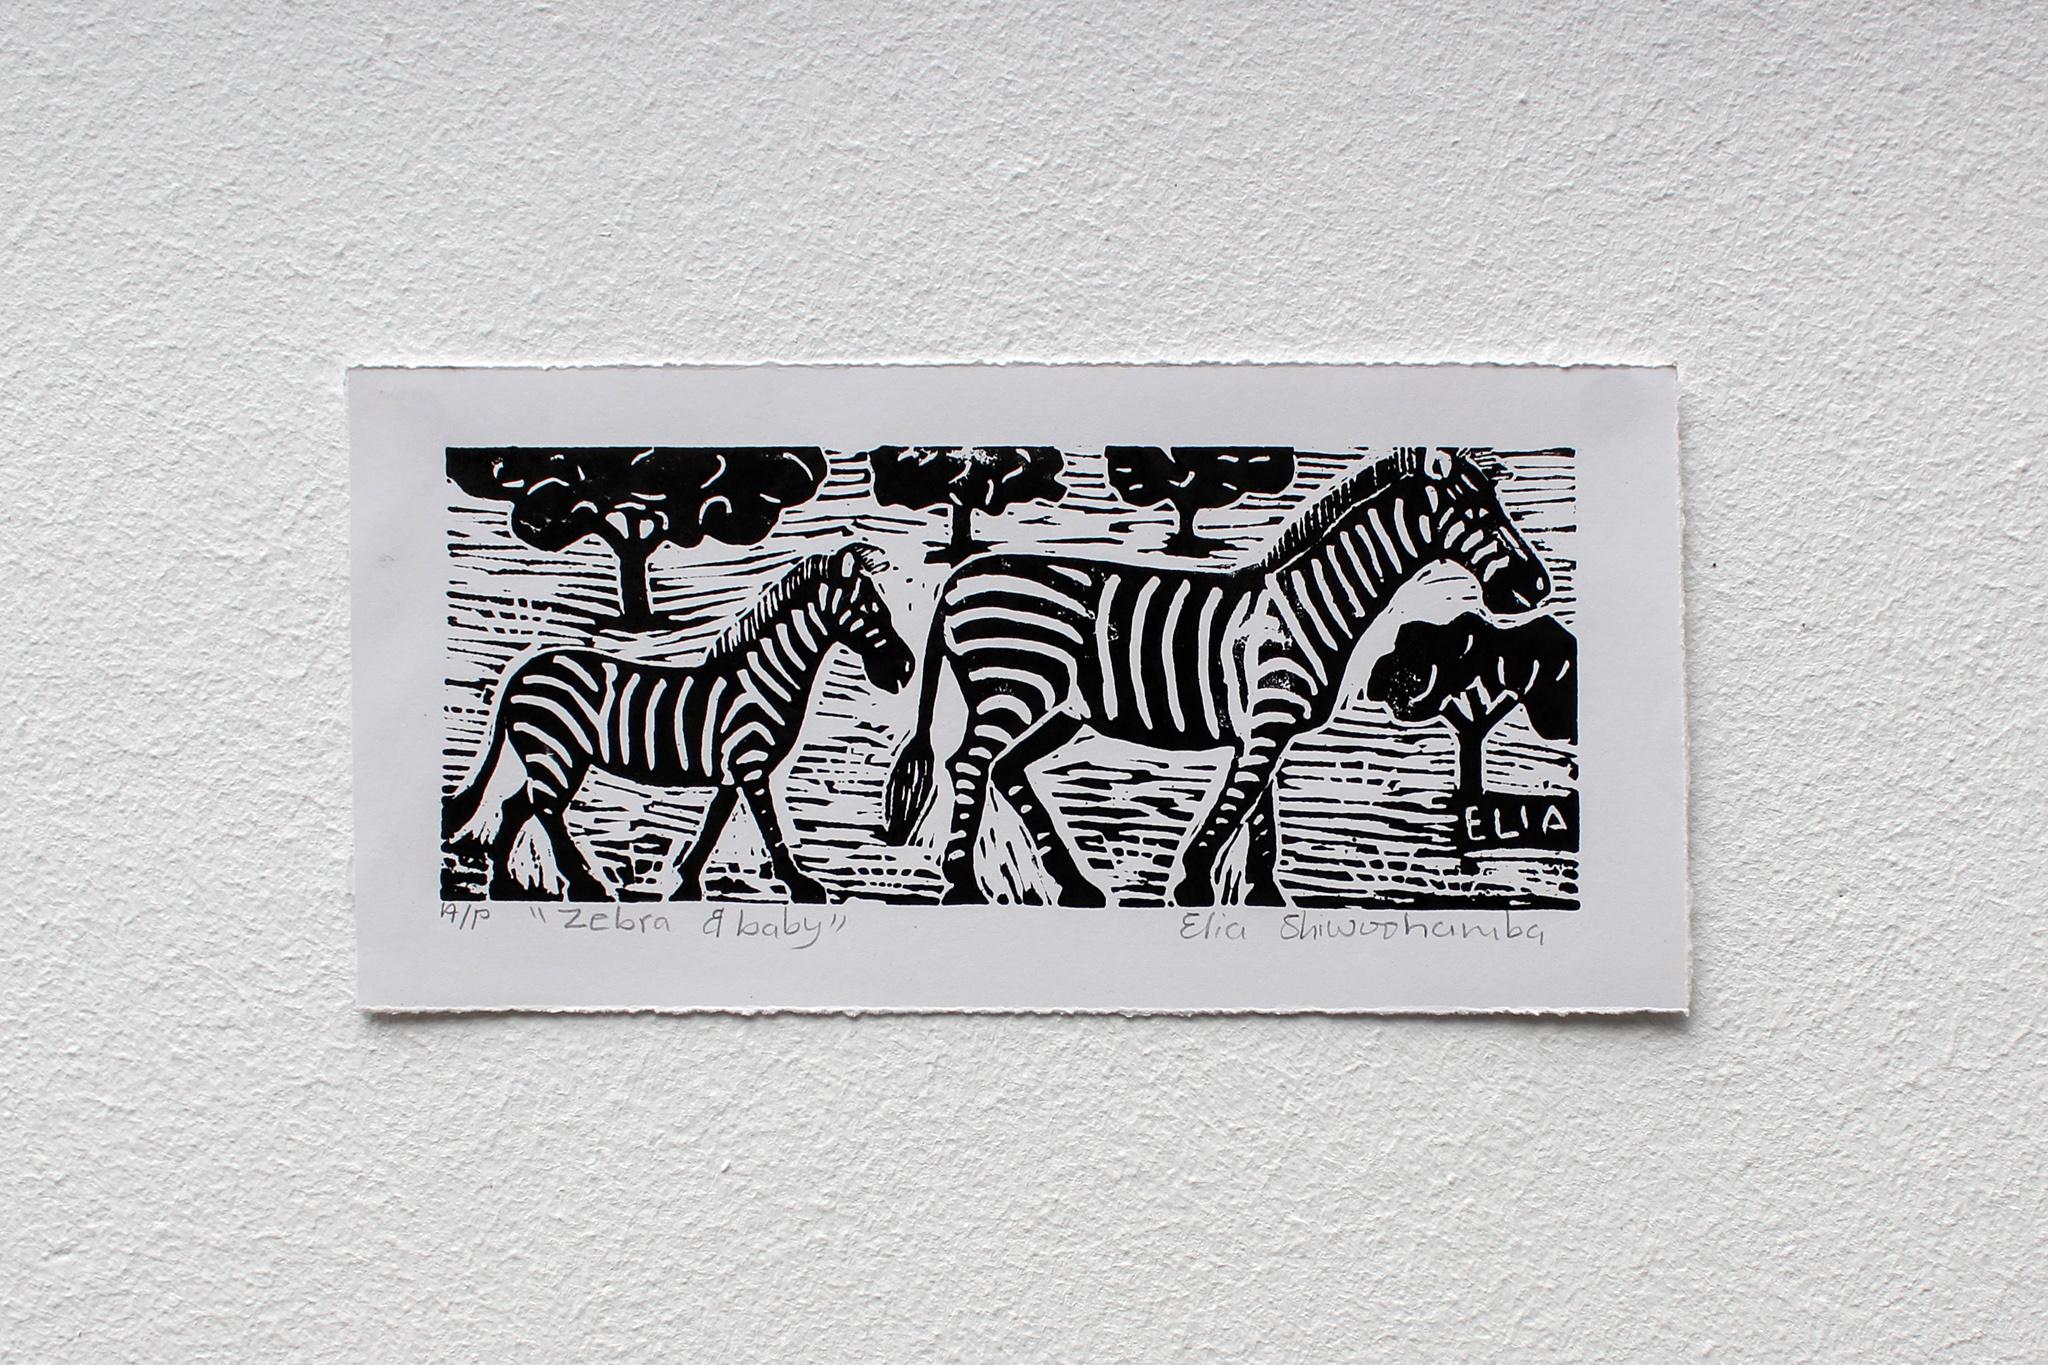 Zebra and baby, Elia Shiwoohamba, impression de blocs de linoléum